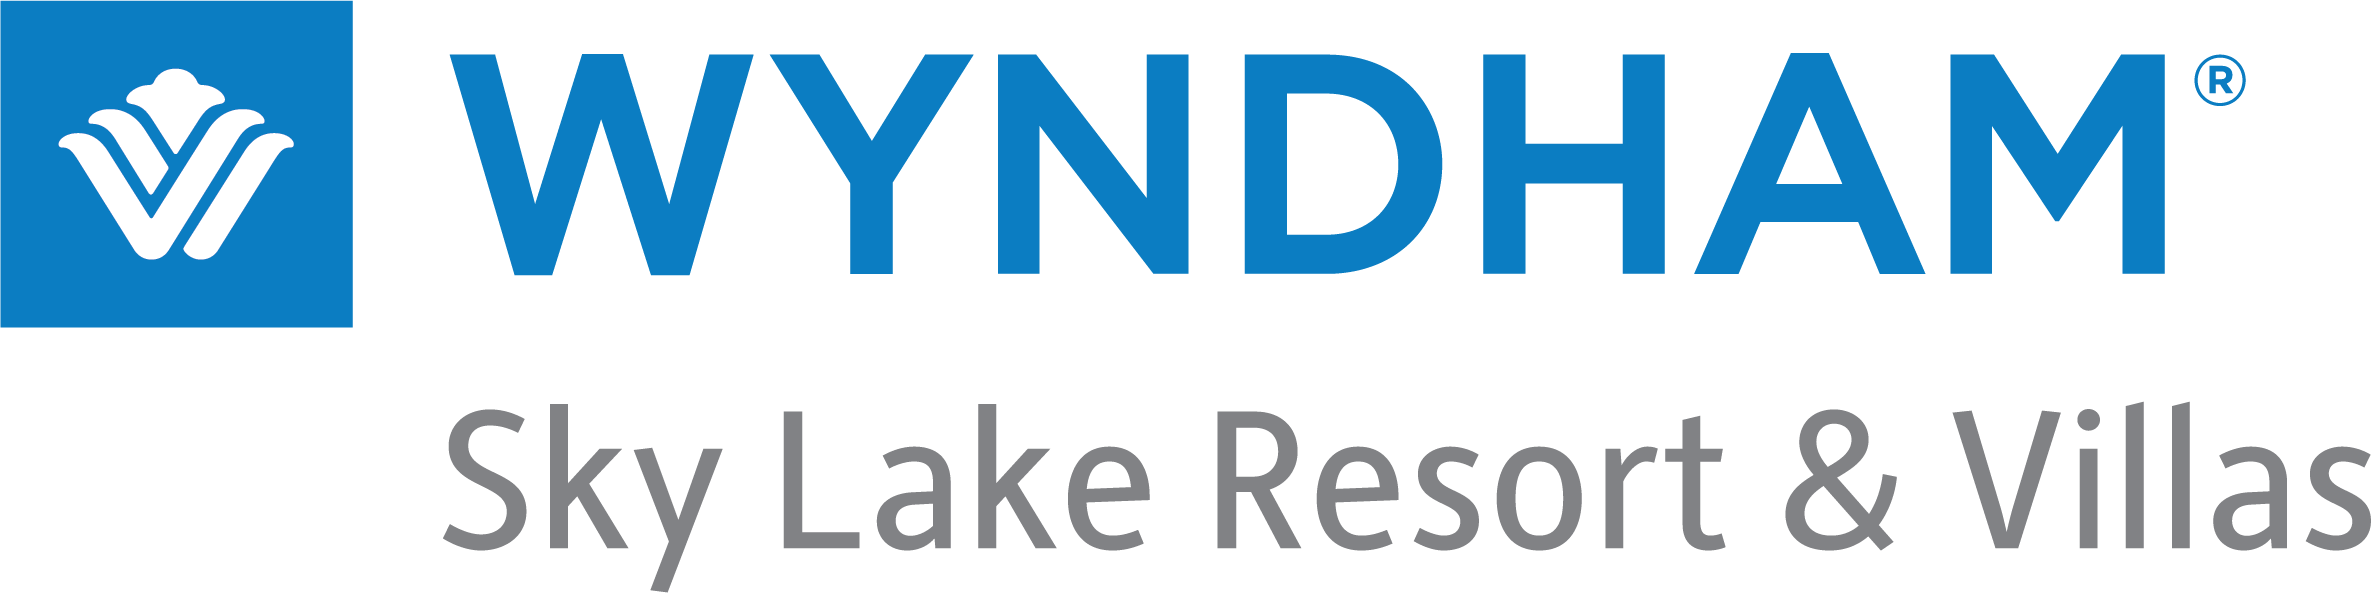 Logo Công ty Cổ phần DK ENC Việt Nam (Wyndham Sky Lake Resort & Villas)